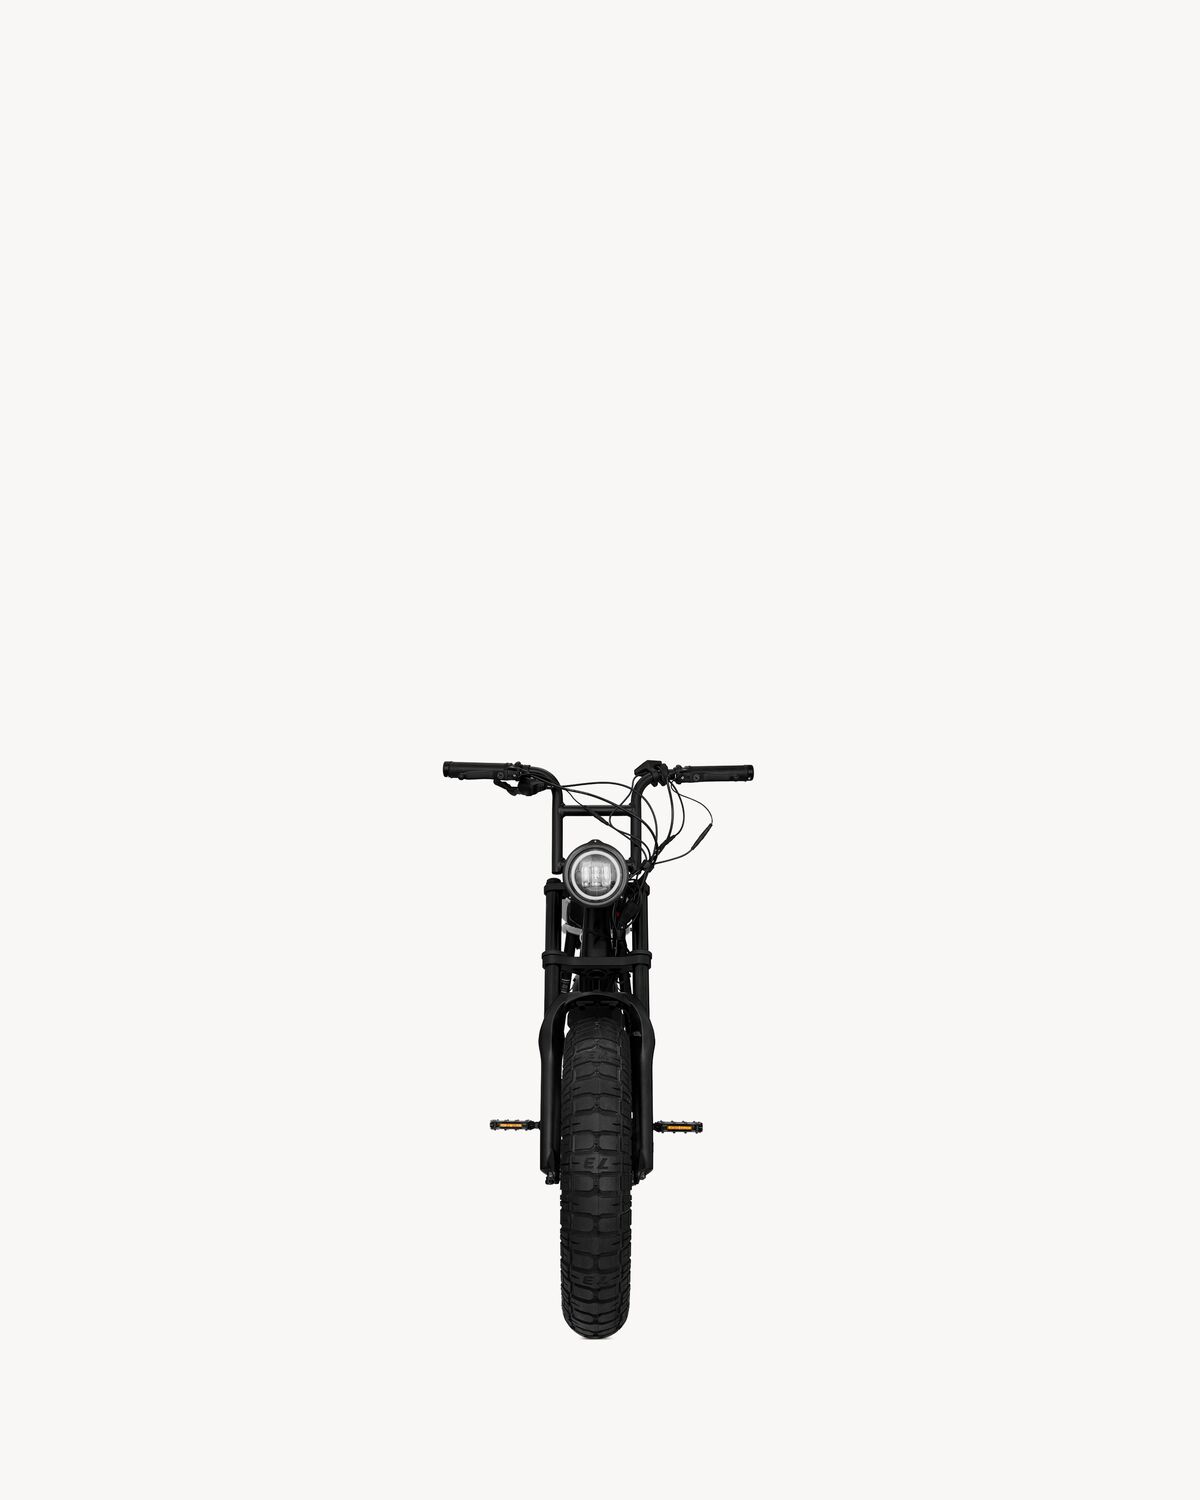 SUPER73-S2 electric bike